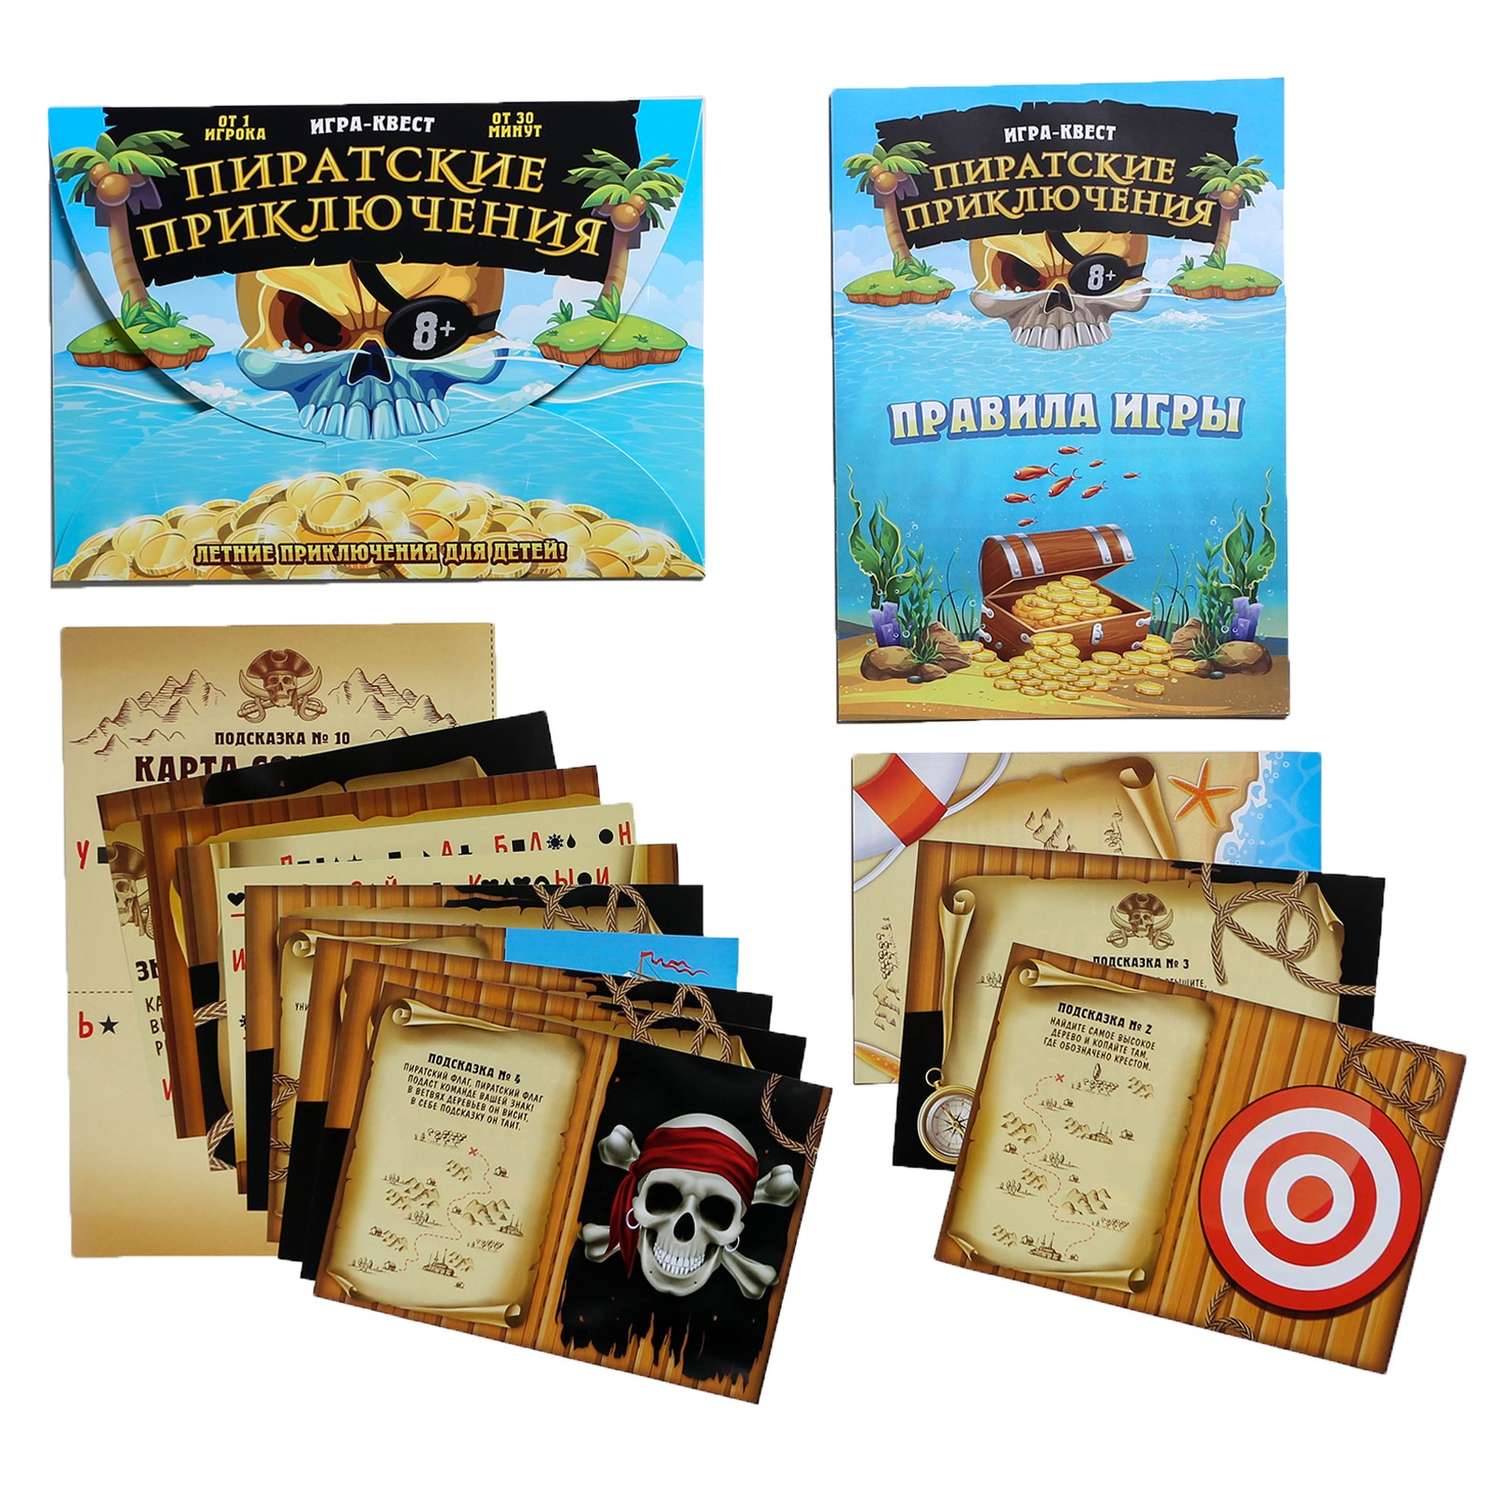 Пиратская квест игра. Игра приключения пиратов Лас Играс. Квест-игра по поиску подарка «пиратские приключения». Пиратские сувениры. Пиратские наборы для квеста.